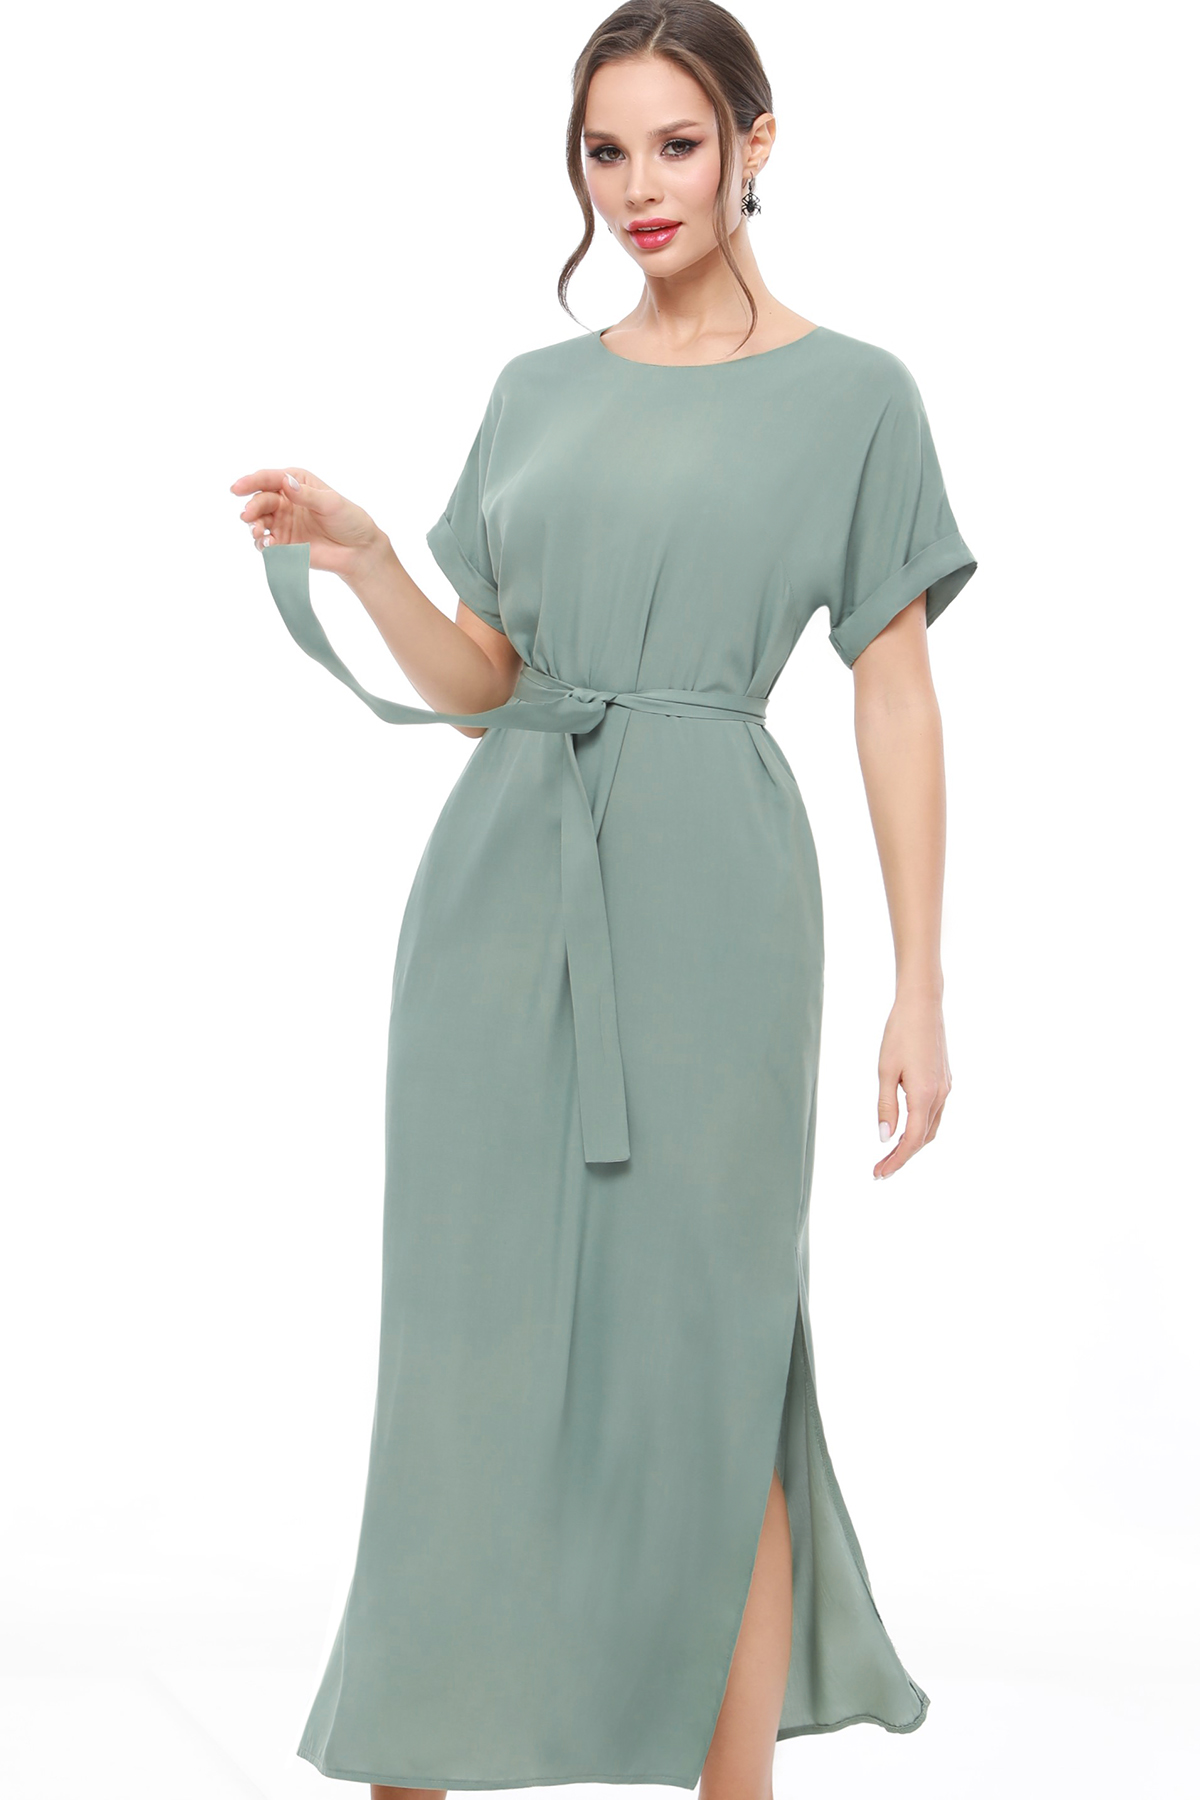 Платье женское DSTrend 0230 зеленое 56 RU